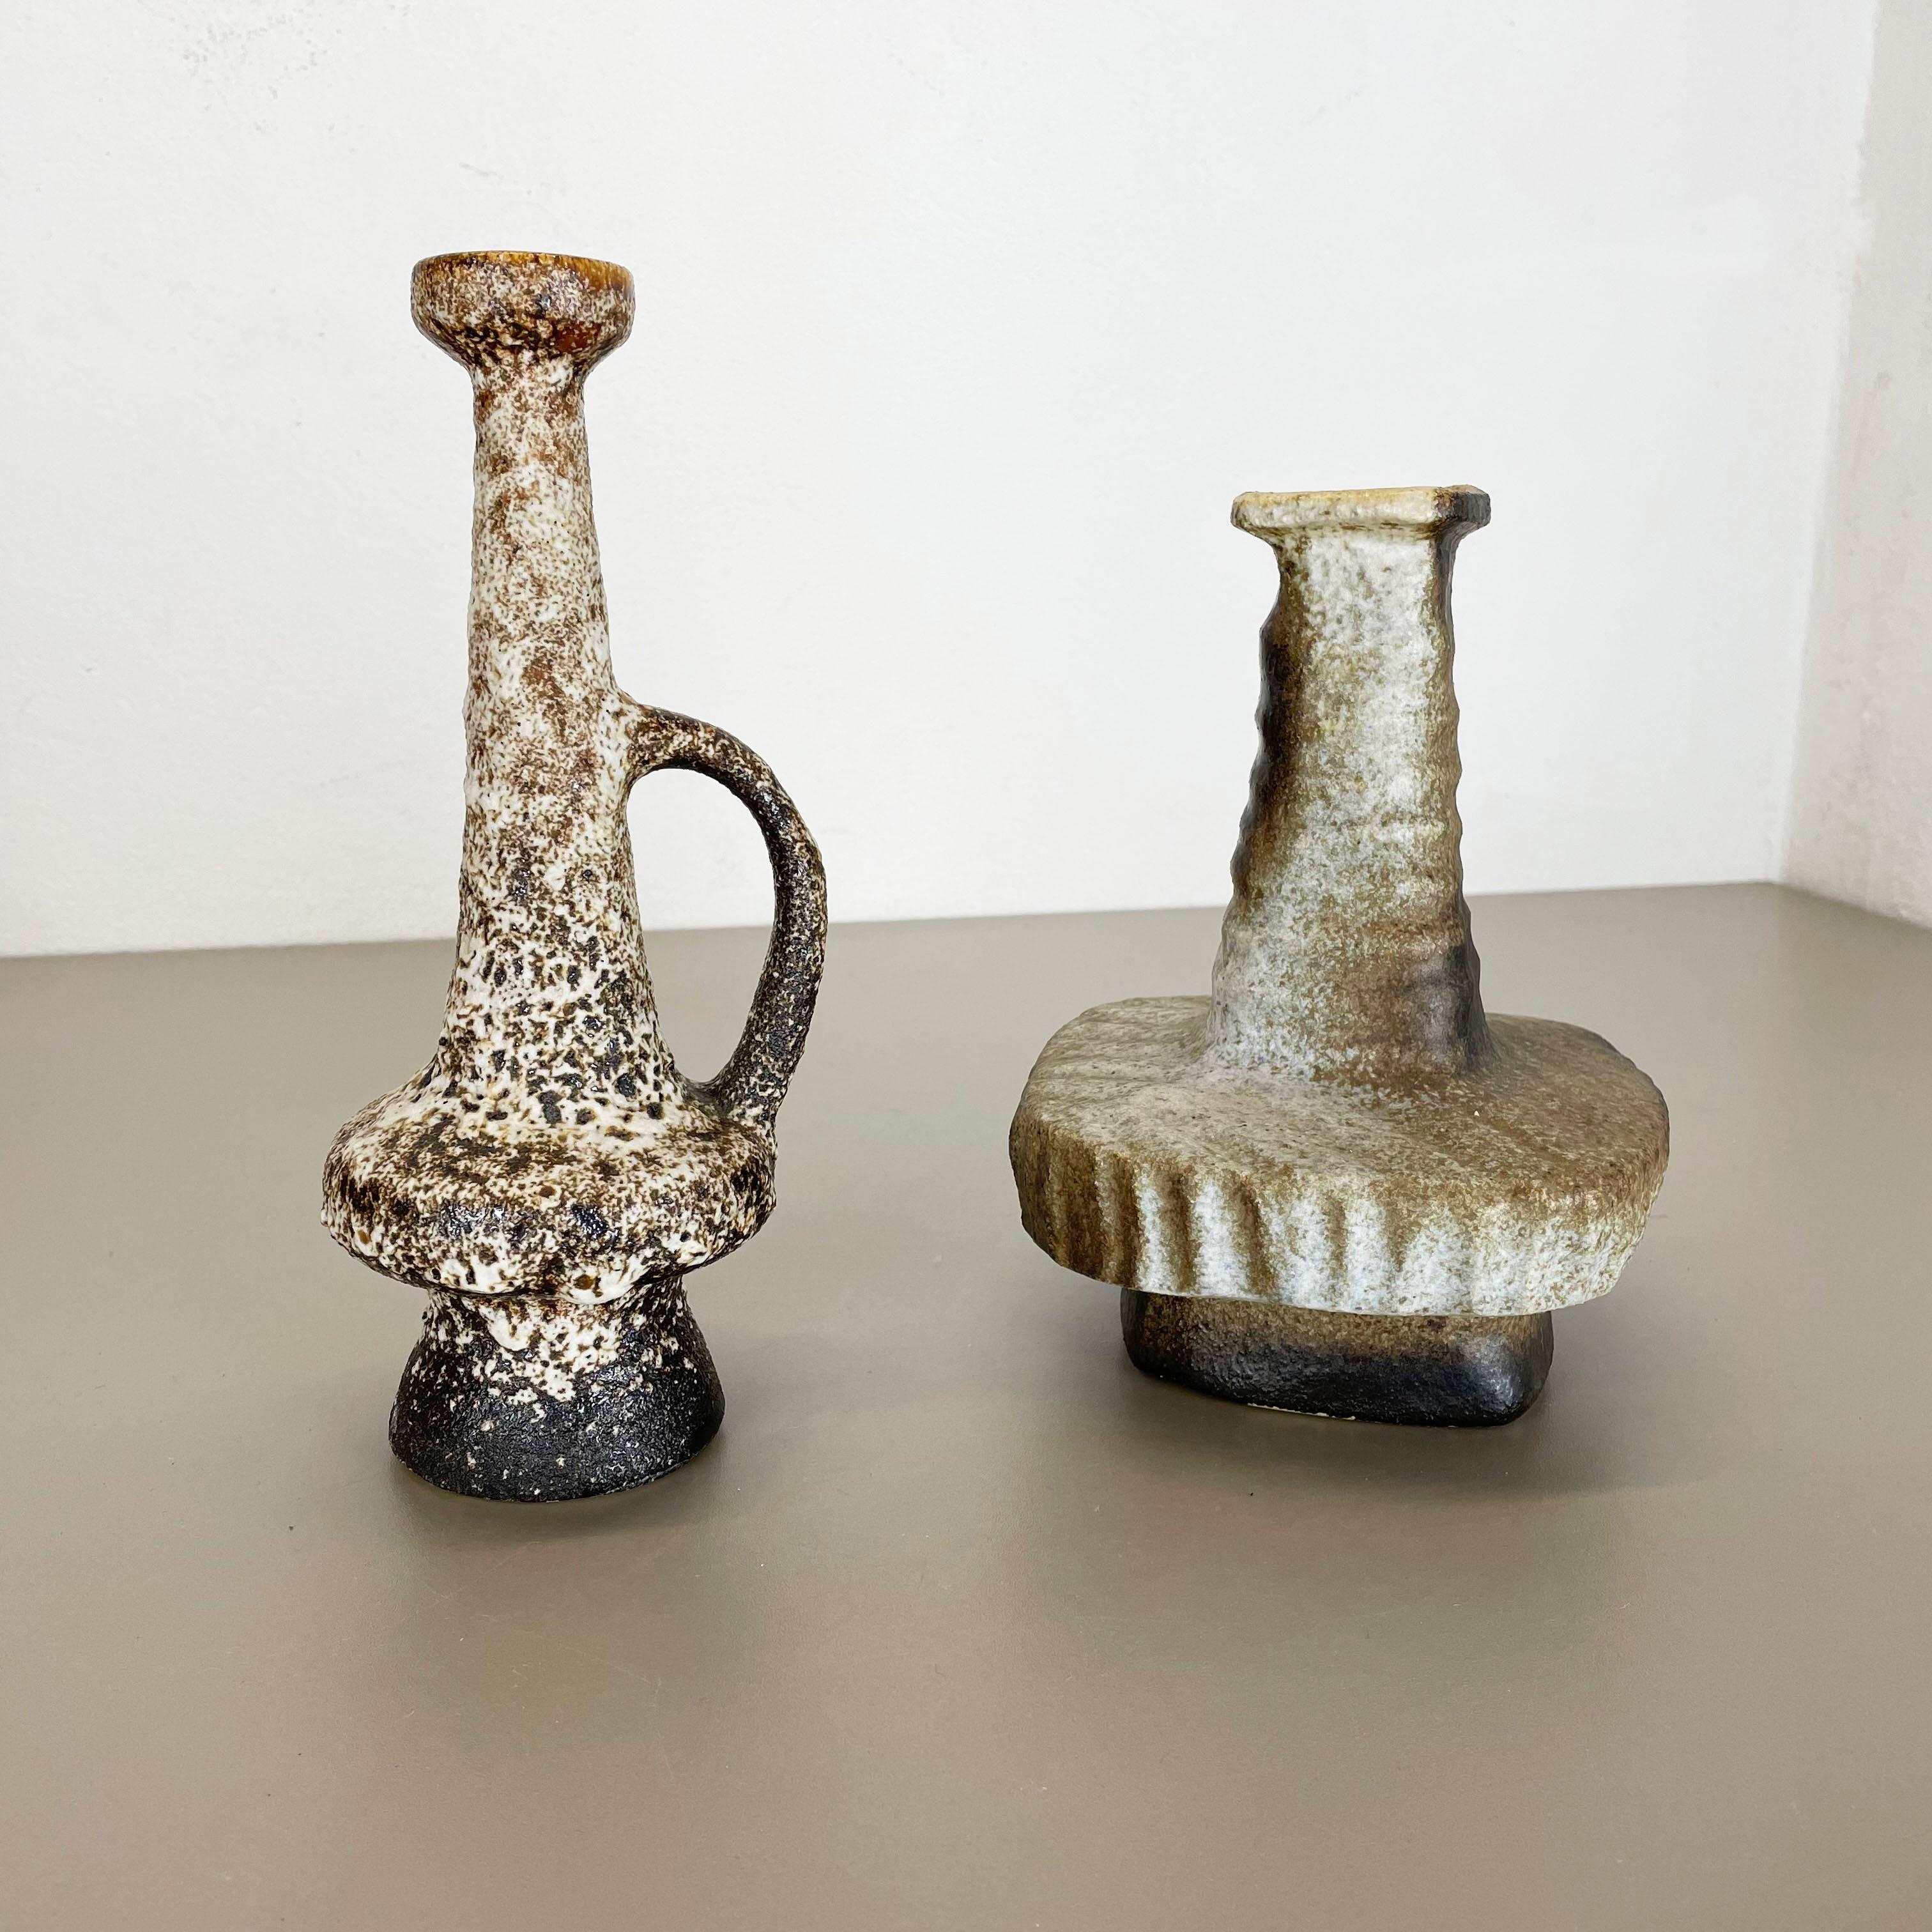 Artikel:

Keramikvasen 2er-Set


Produzent:

VEST Ceramics, Niederlande



Jahrzehnt:

1970s



Satz von 2 originalen Vintage Studio Pottery Vasen wurde in den 1970er Jahren von Vest Ceramics, Niederlande, hergestellt. Es ist aus